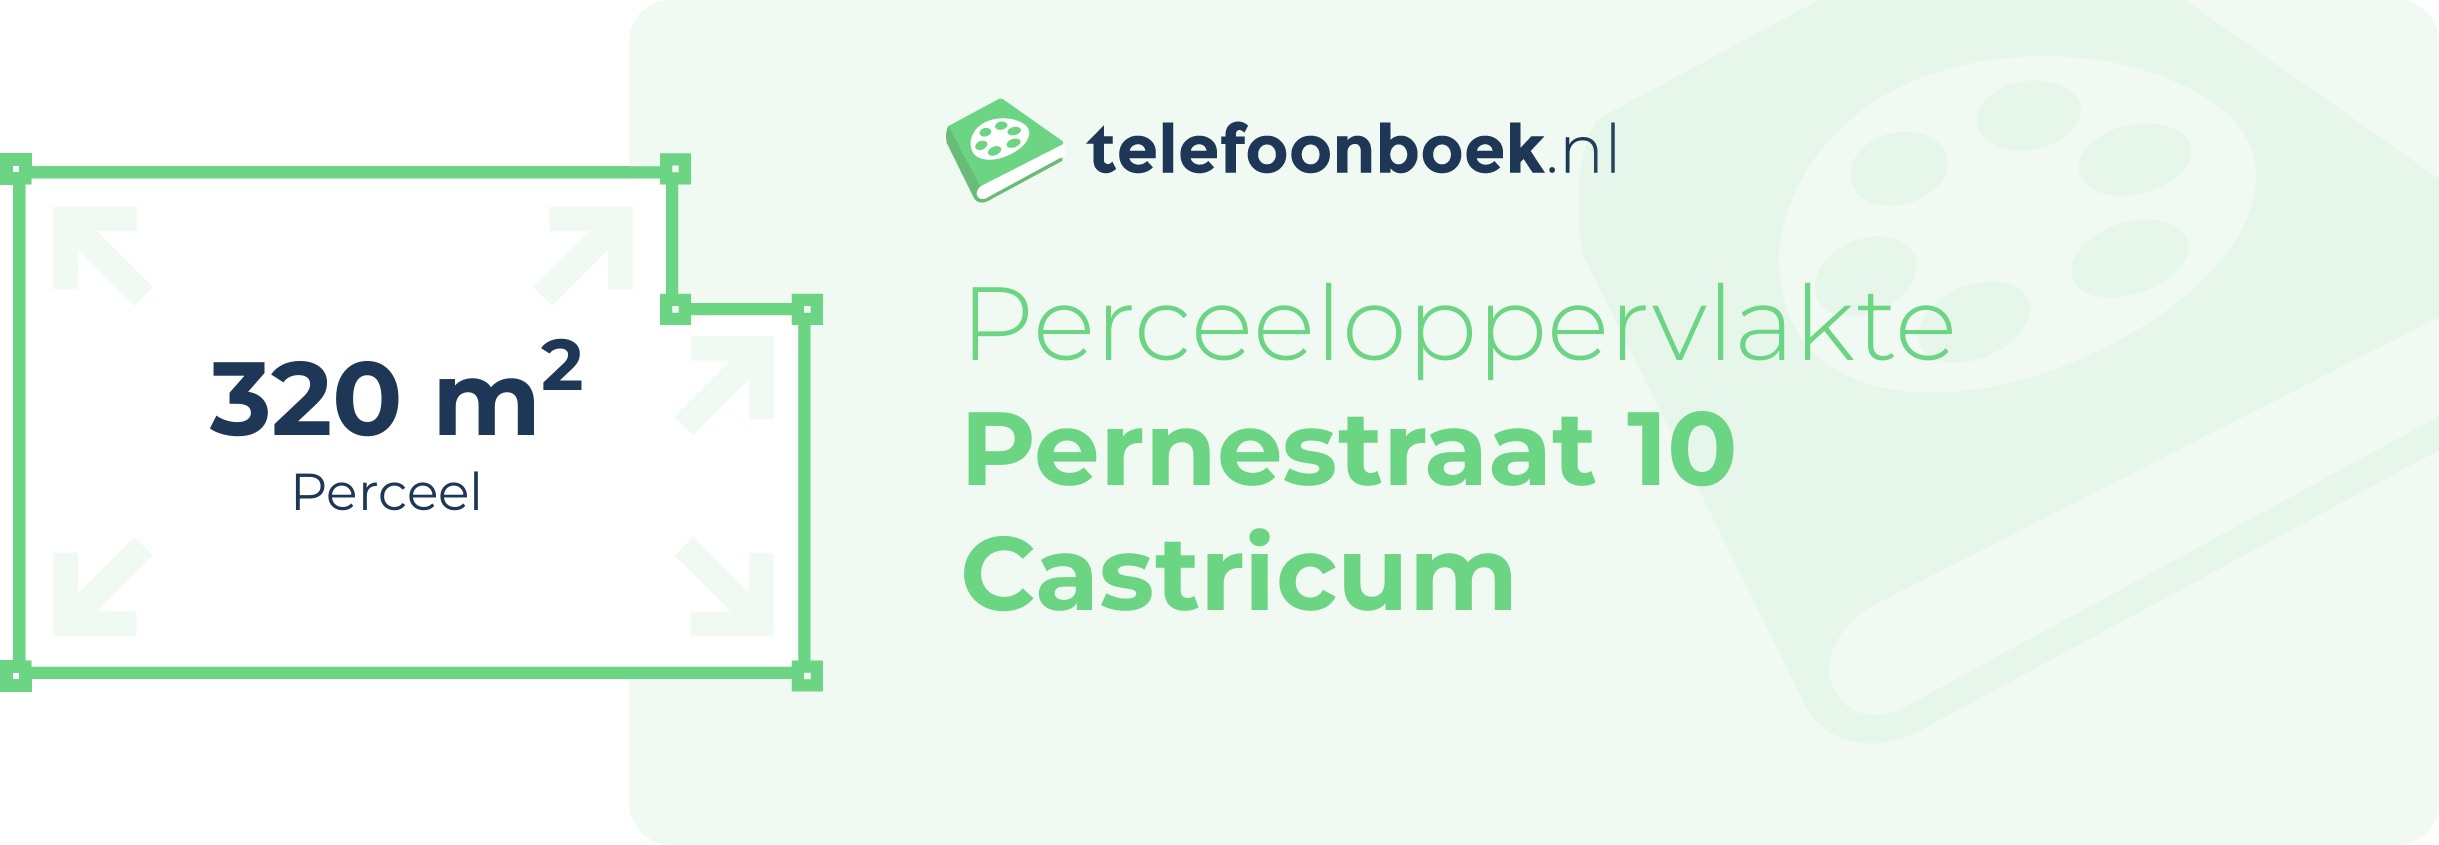 Perceeloppervlakte Pernestraat 10 Castricum